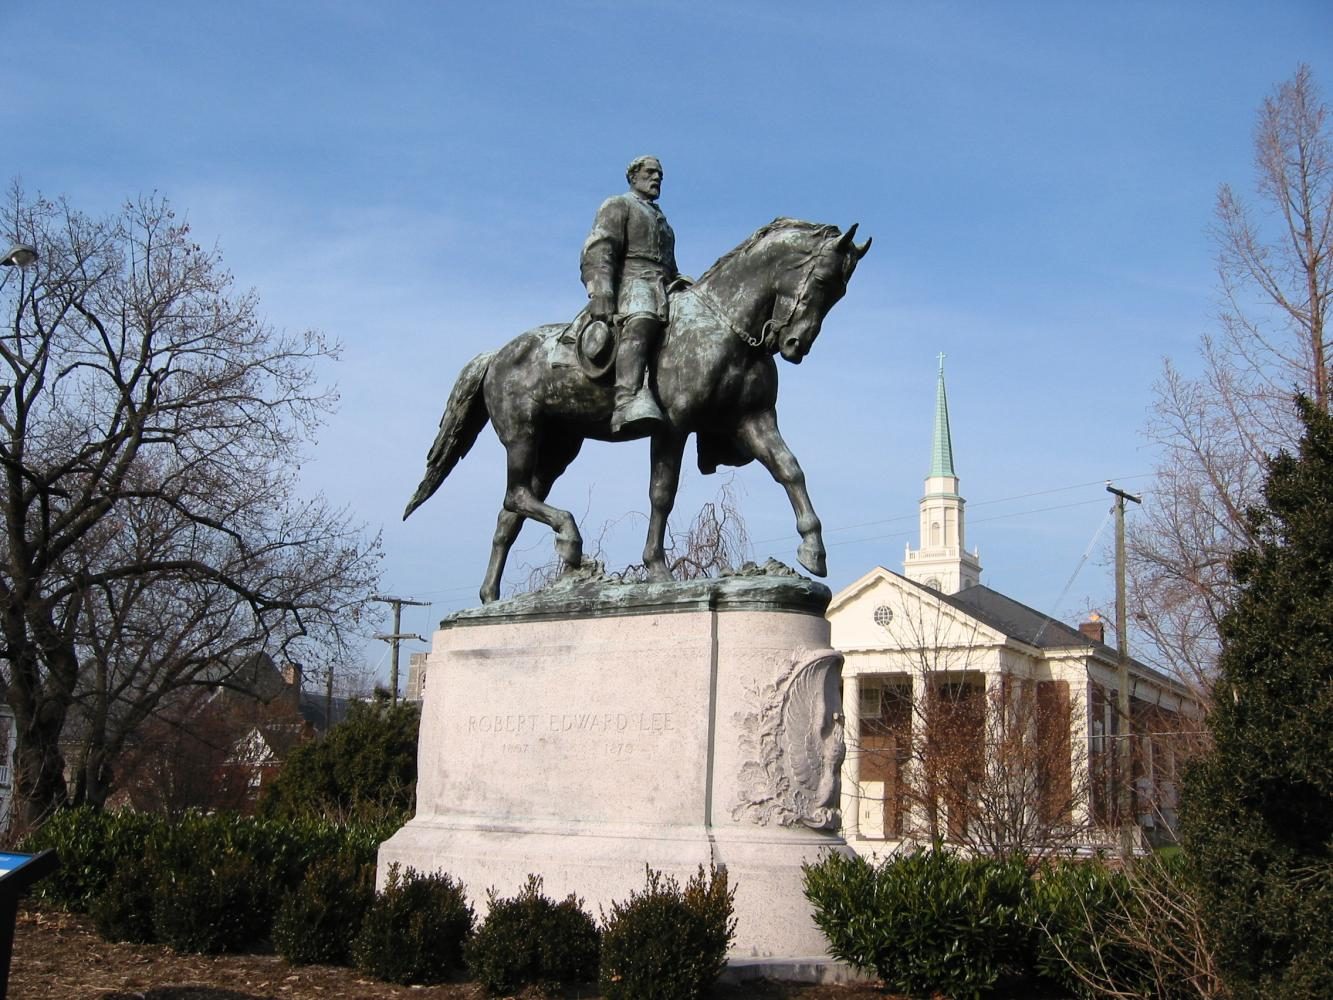  Robert E Lees statue in Charlottesville, VA